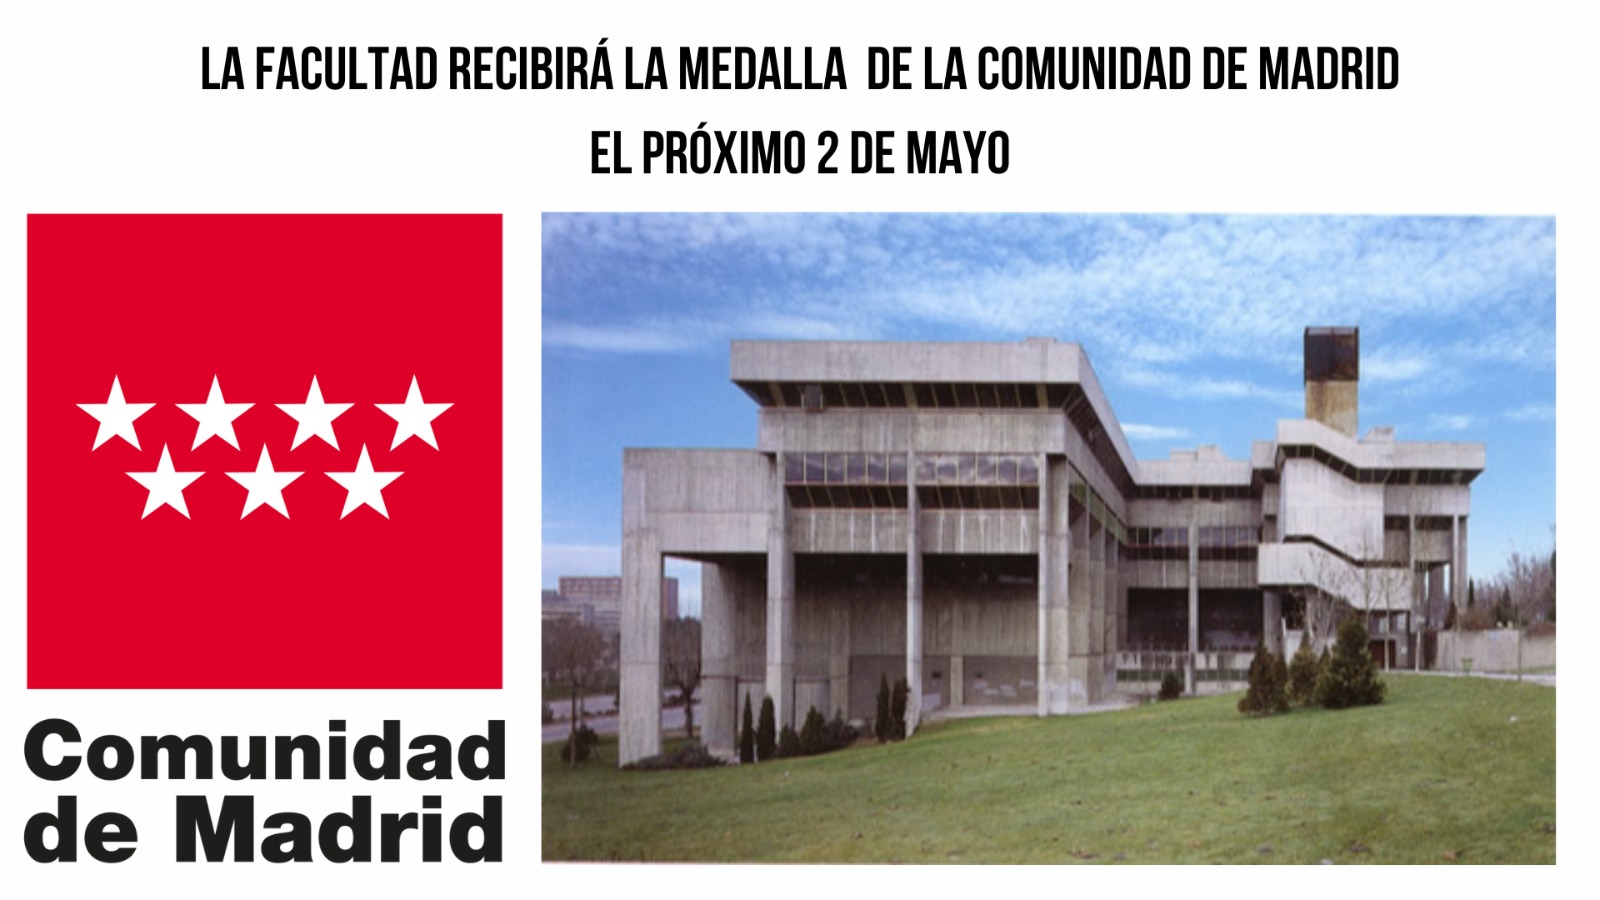 La Facultad recibe la Medalla de la Comunidad de Madrid